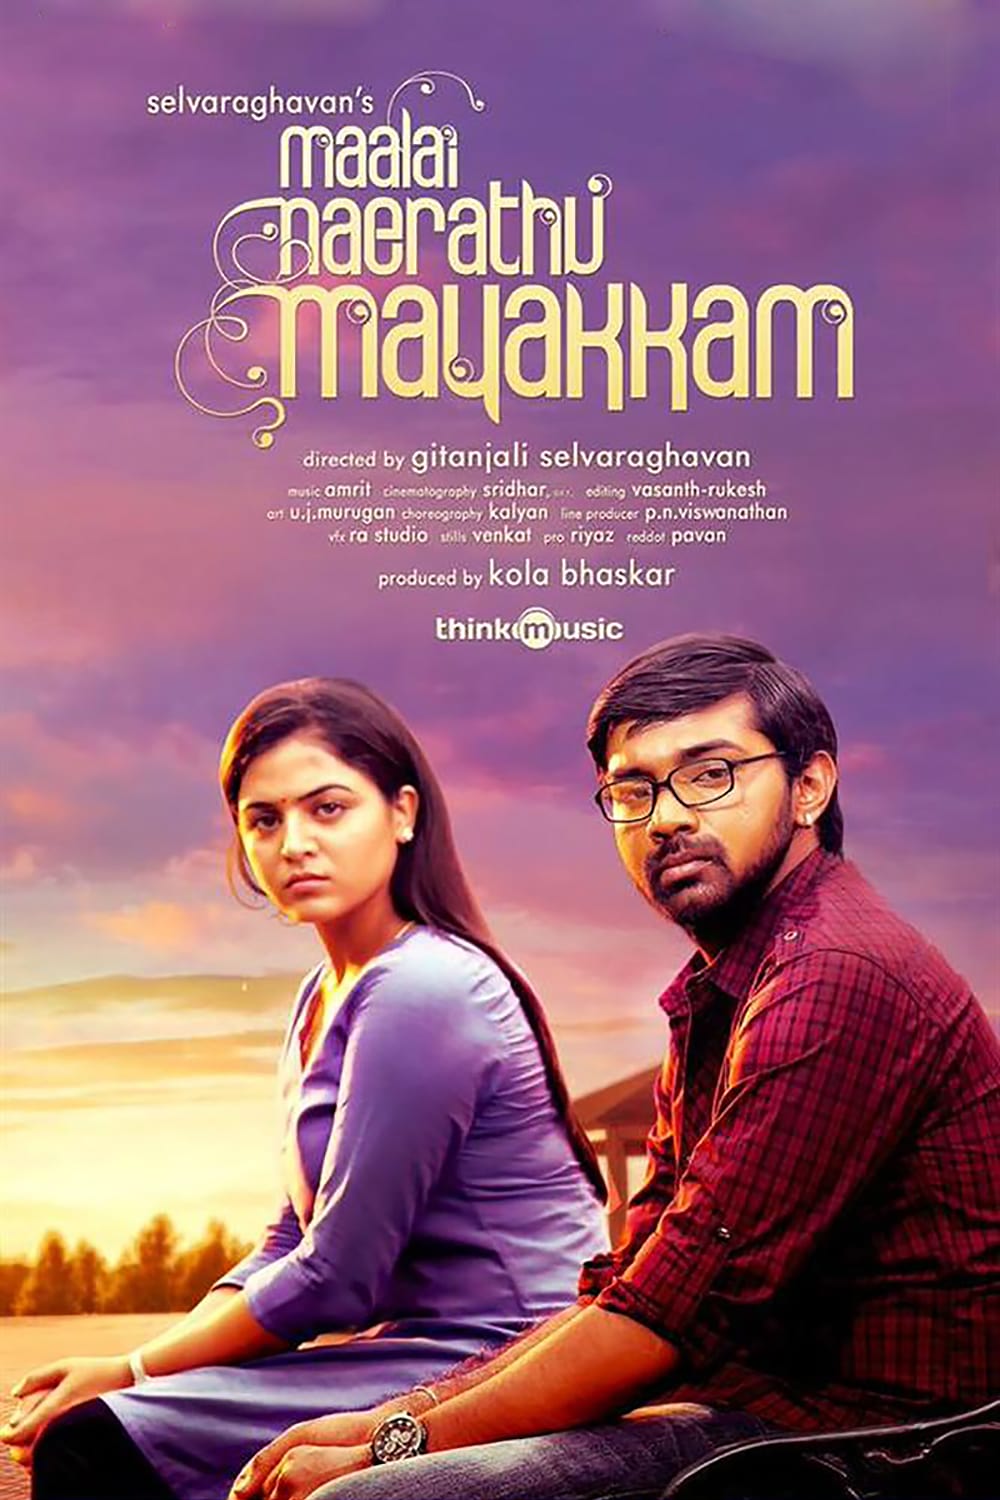 Poster for the movie "Maalai Nerathu Mayakkam"